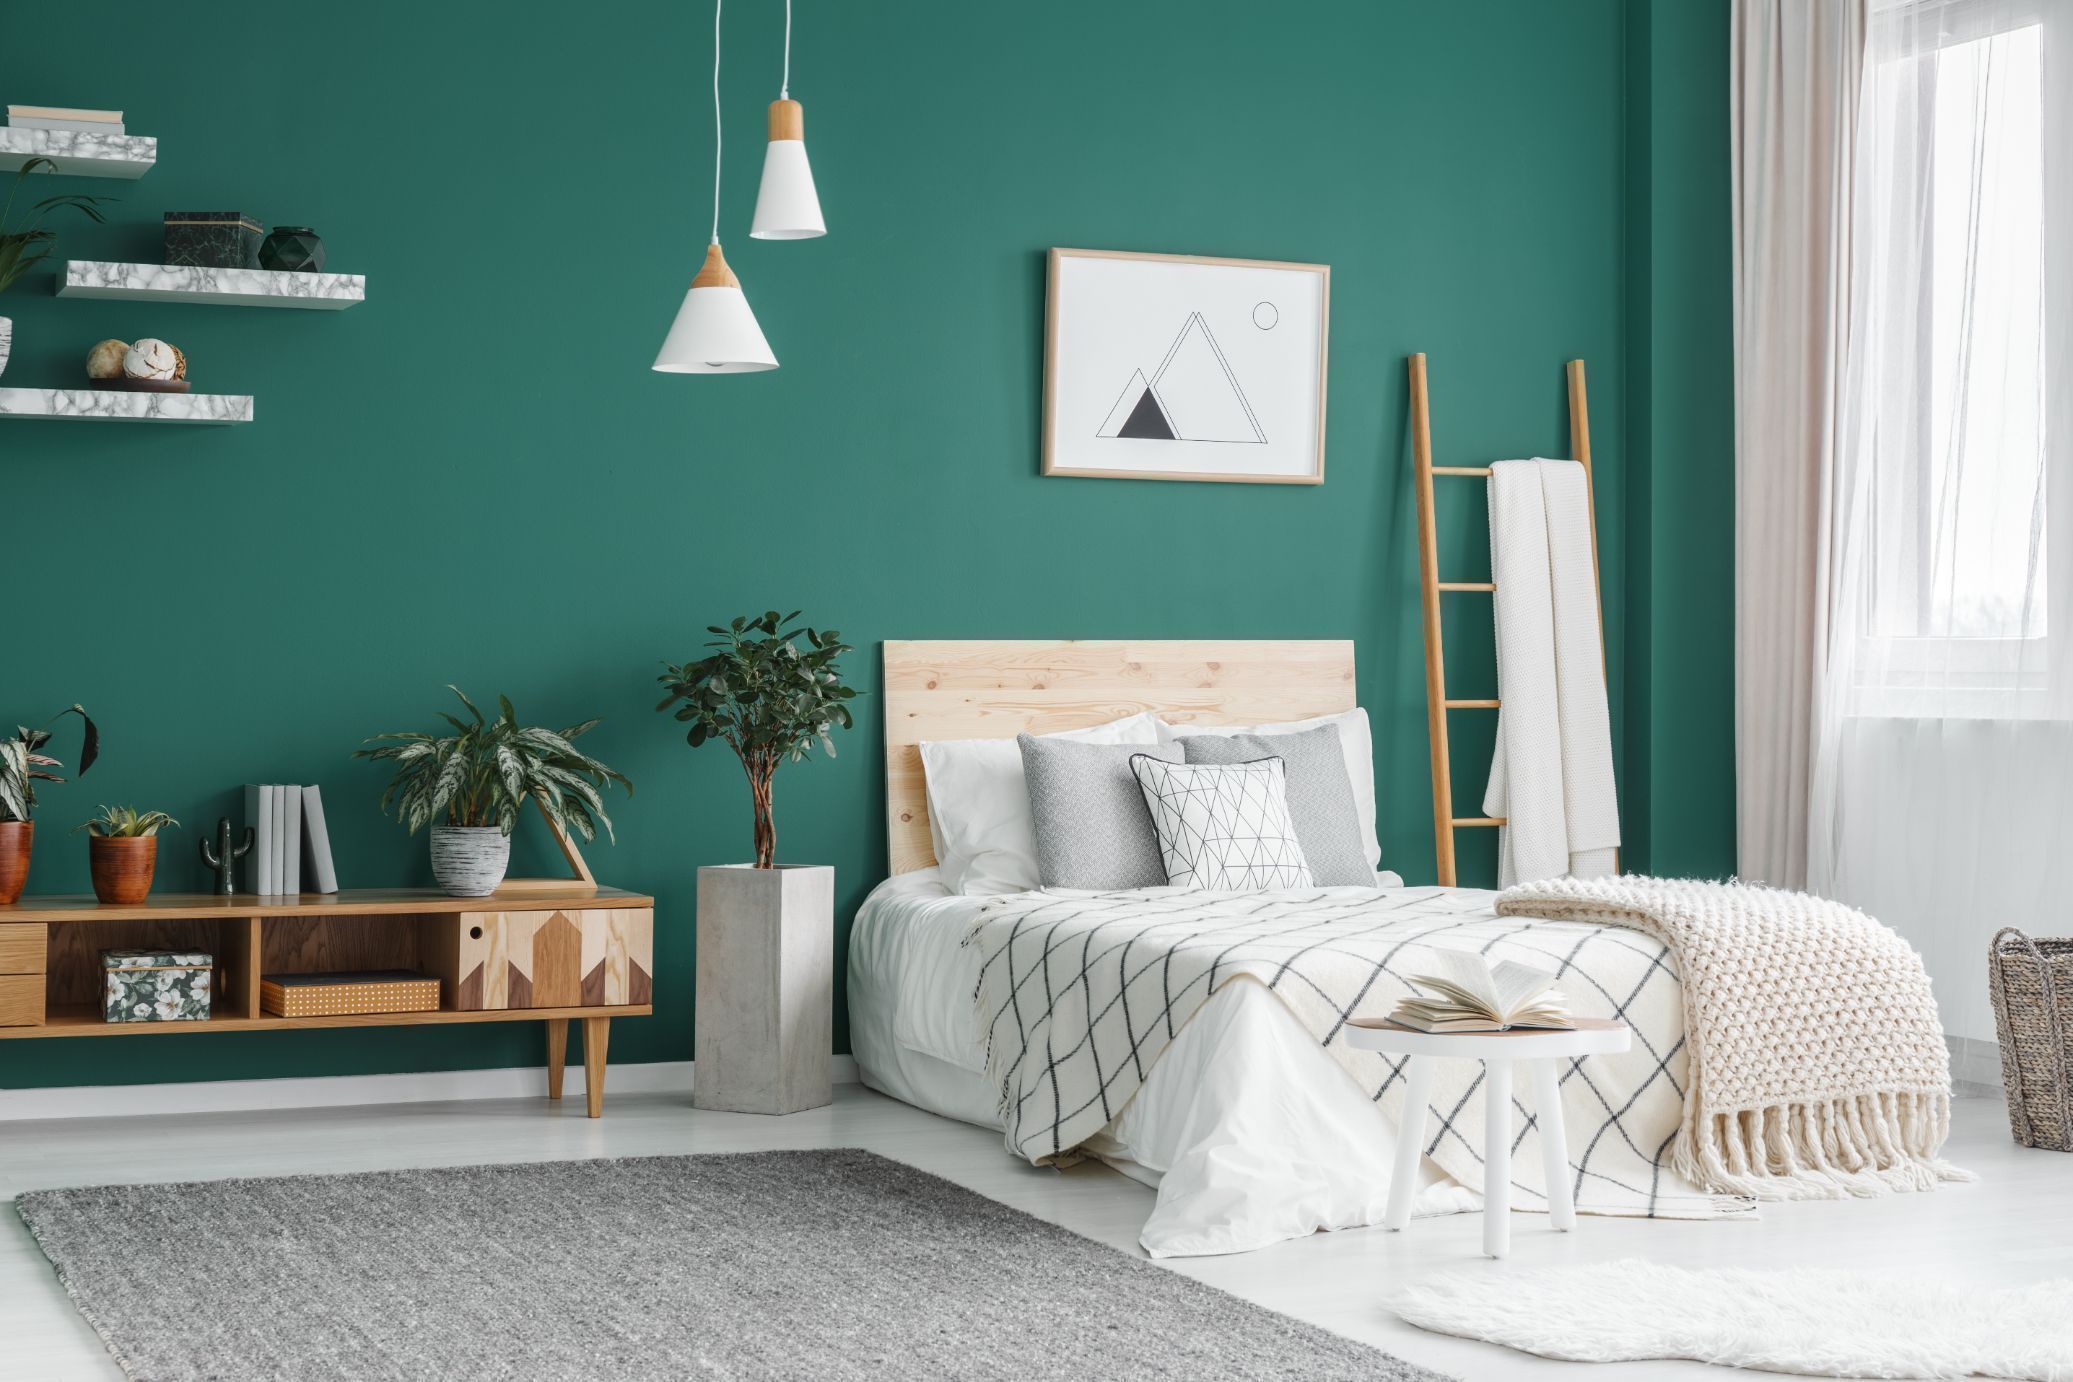 placement of furniture in bedroom as per vastu